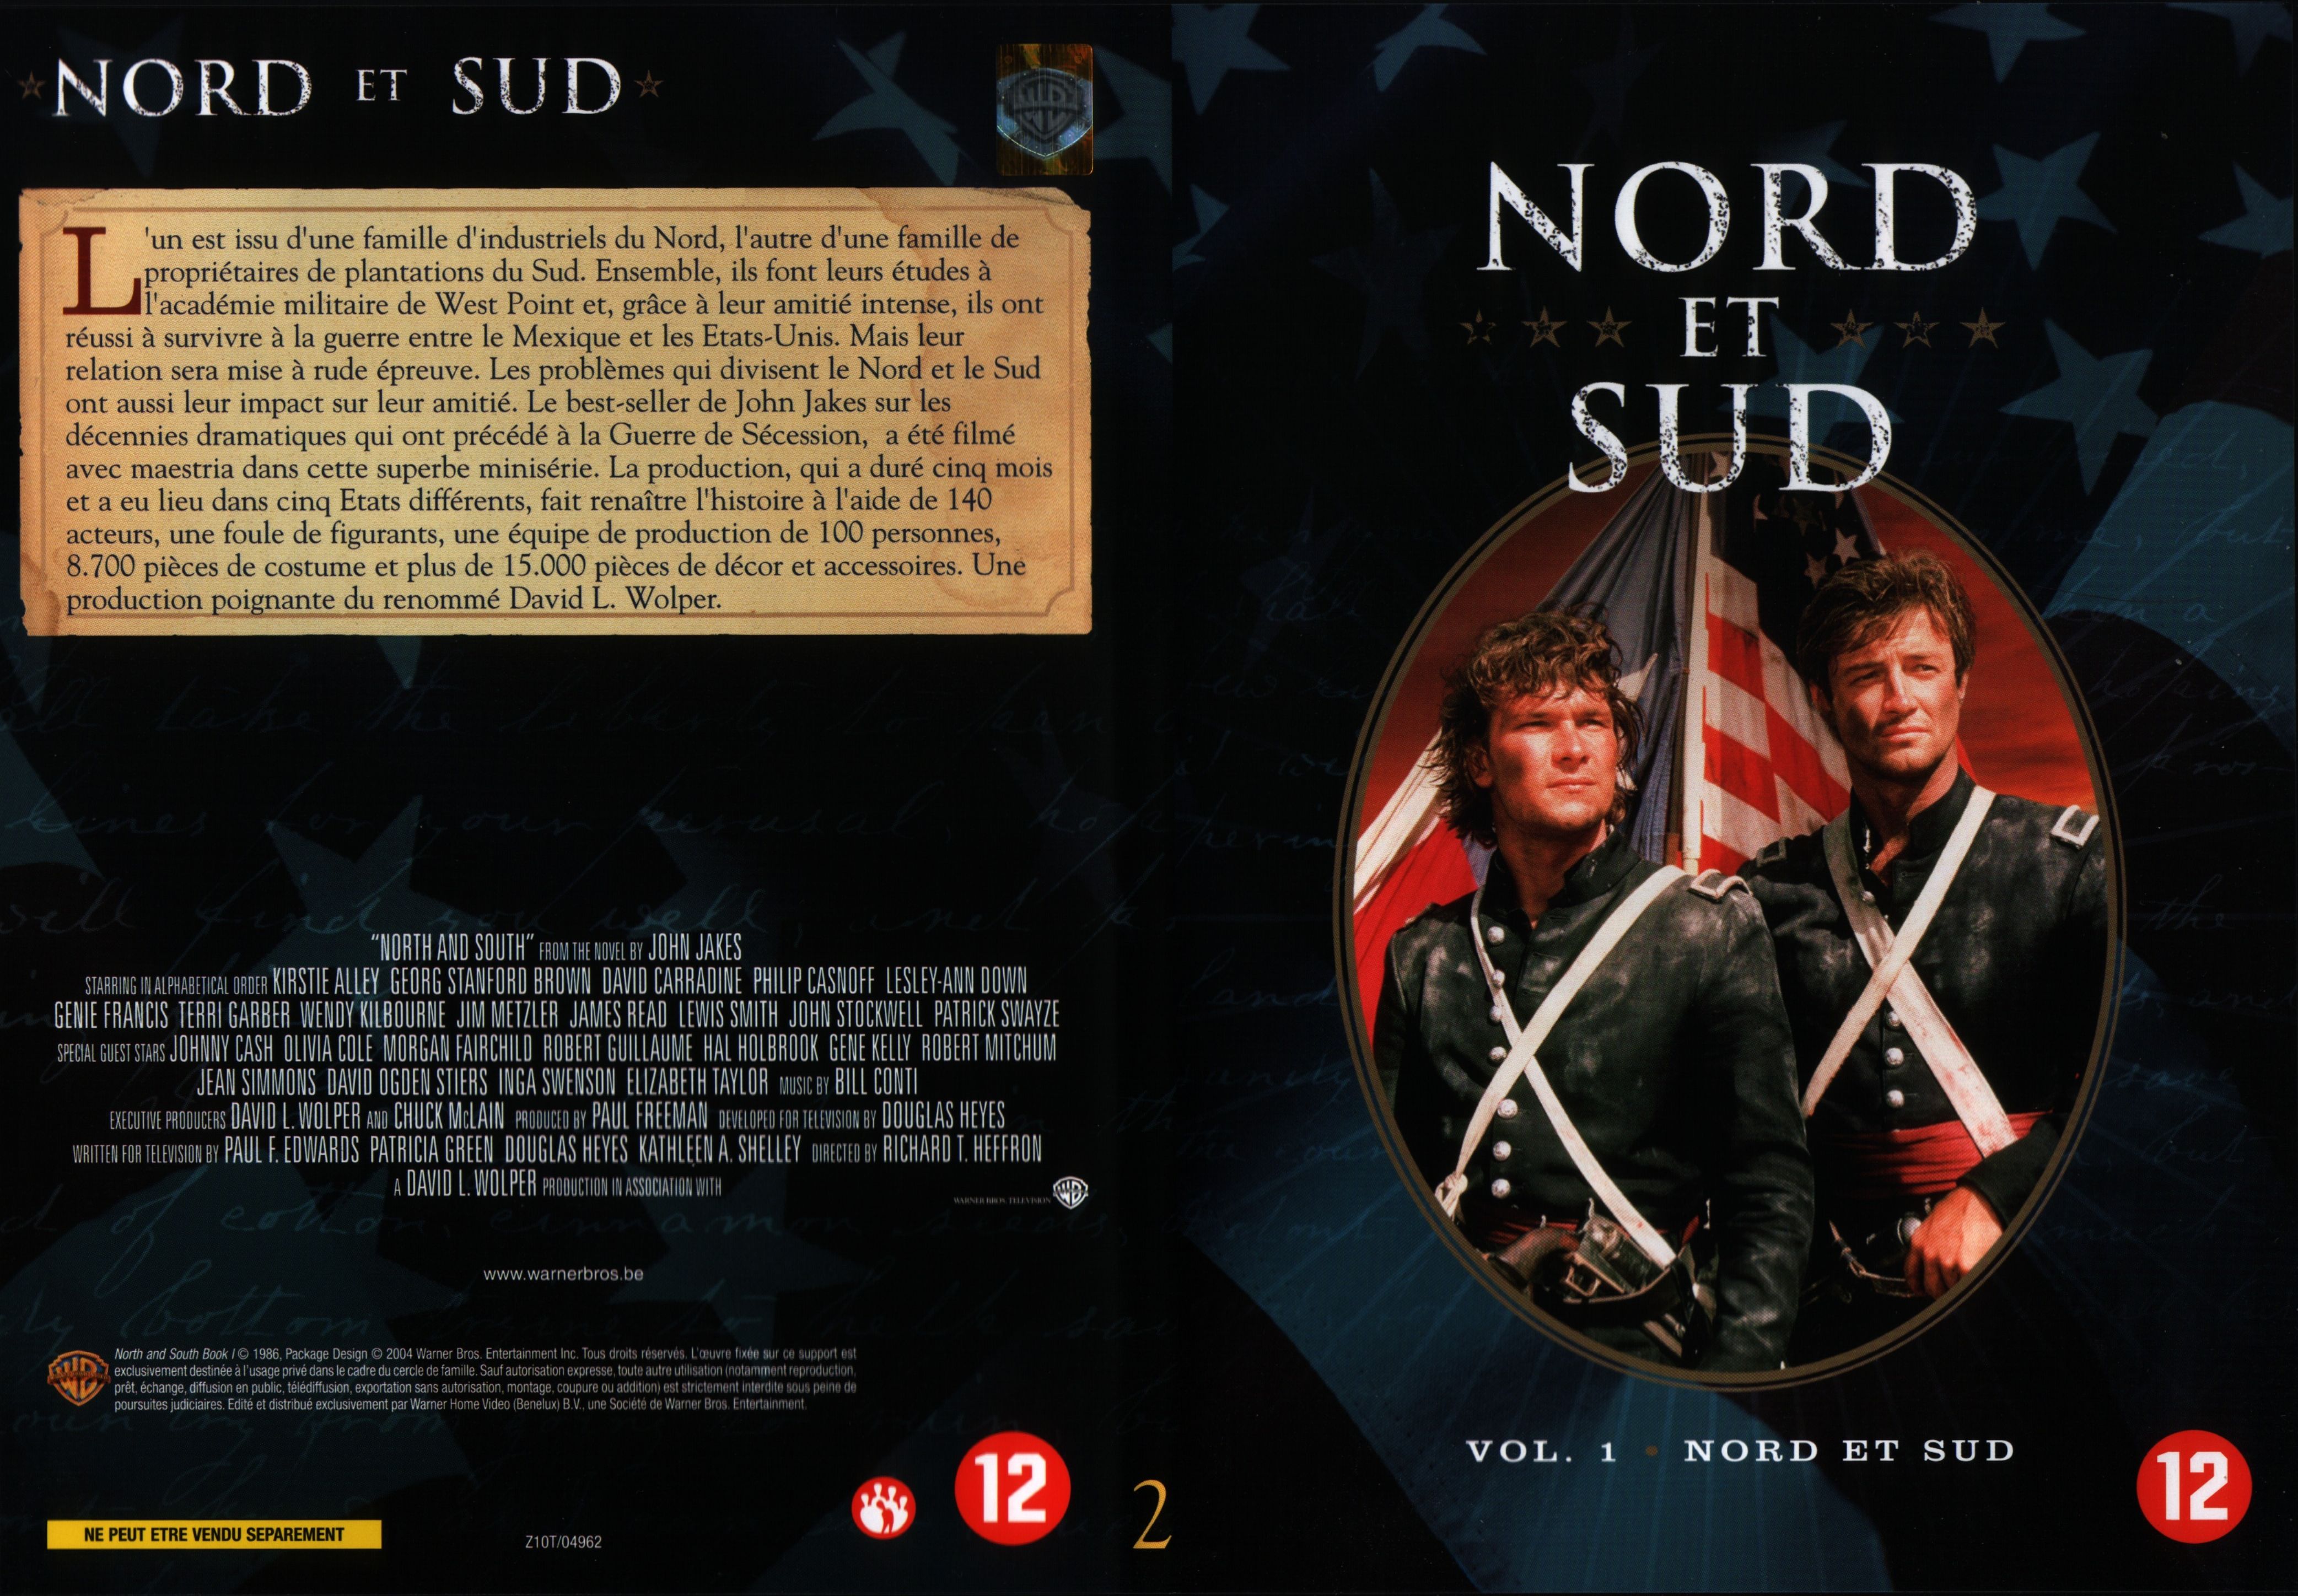 Jaquette DVD Nord et sud vol 1 dvd 2